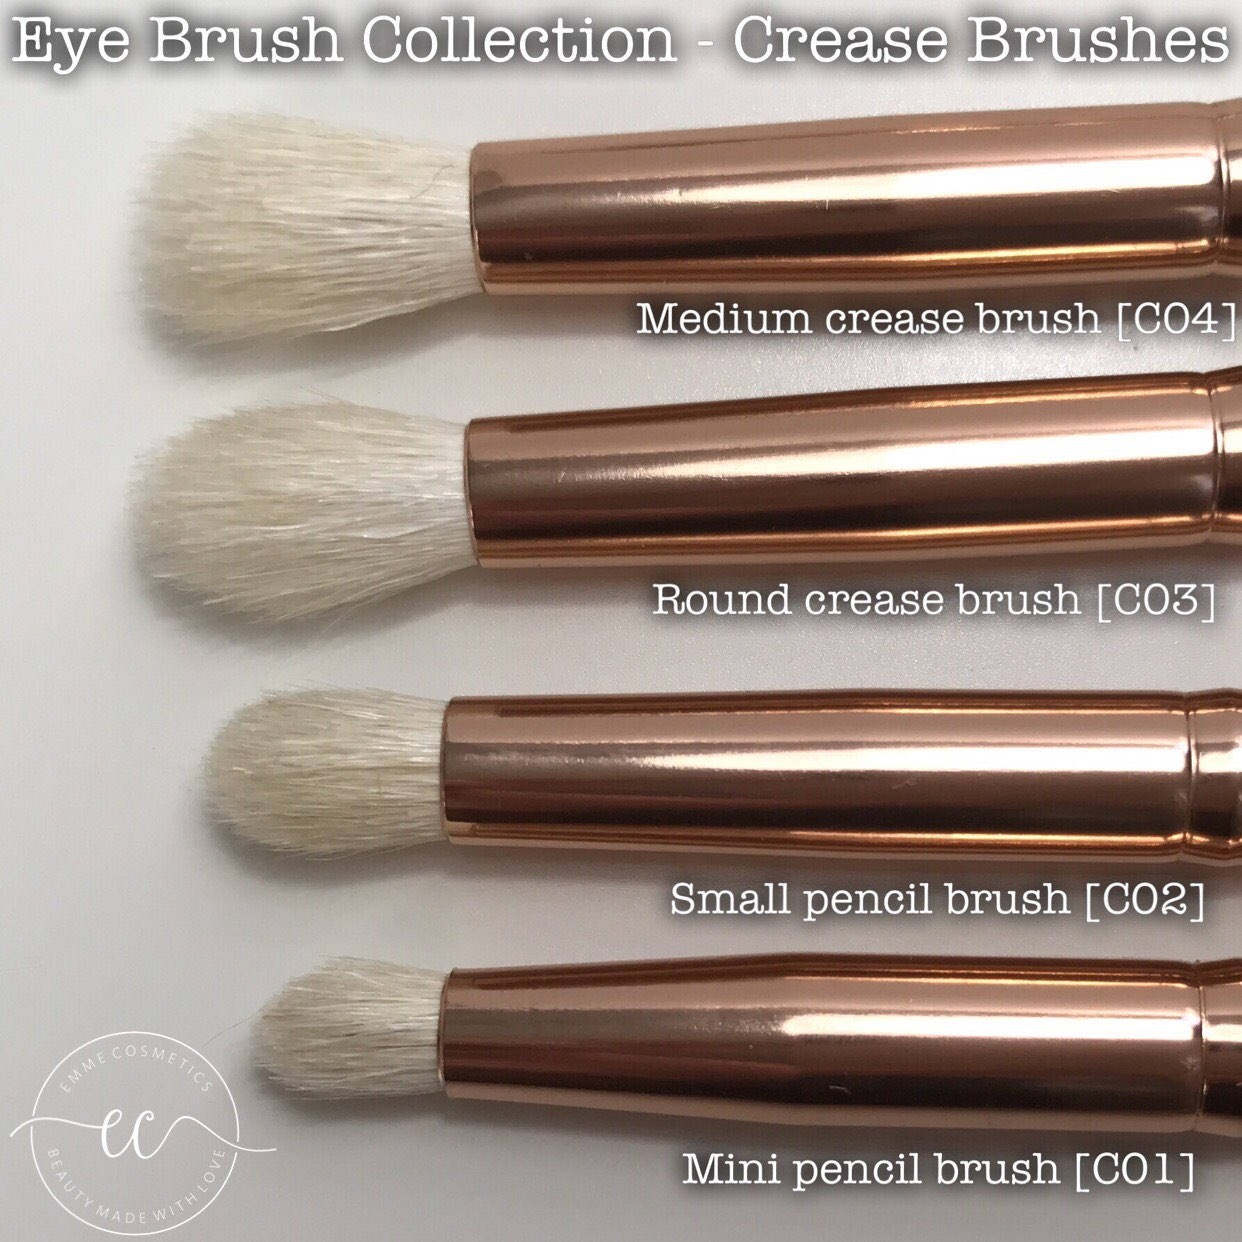 C04 - Medium Crease Brush